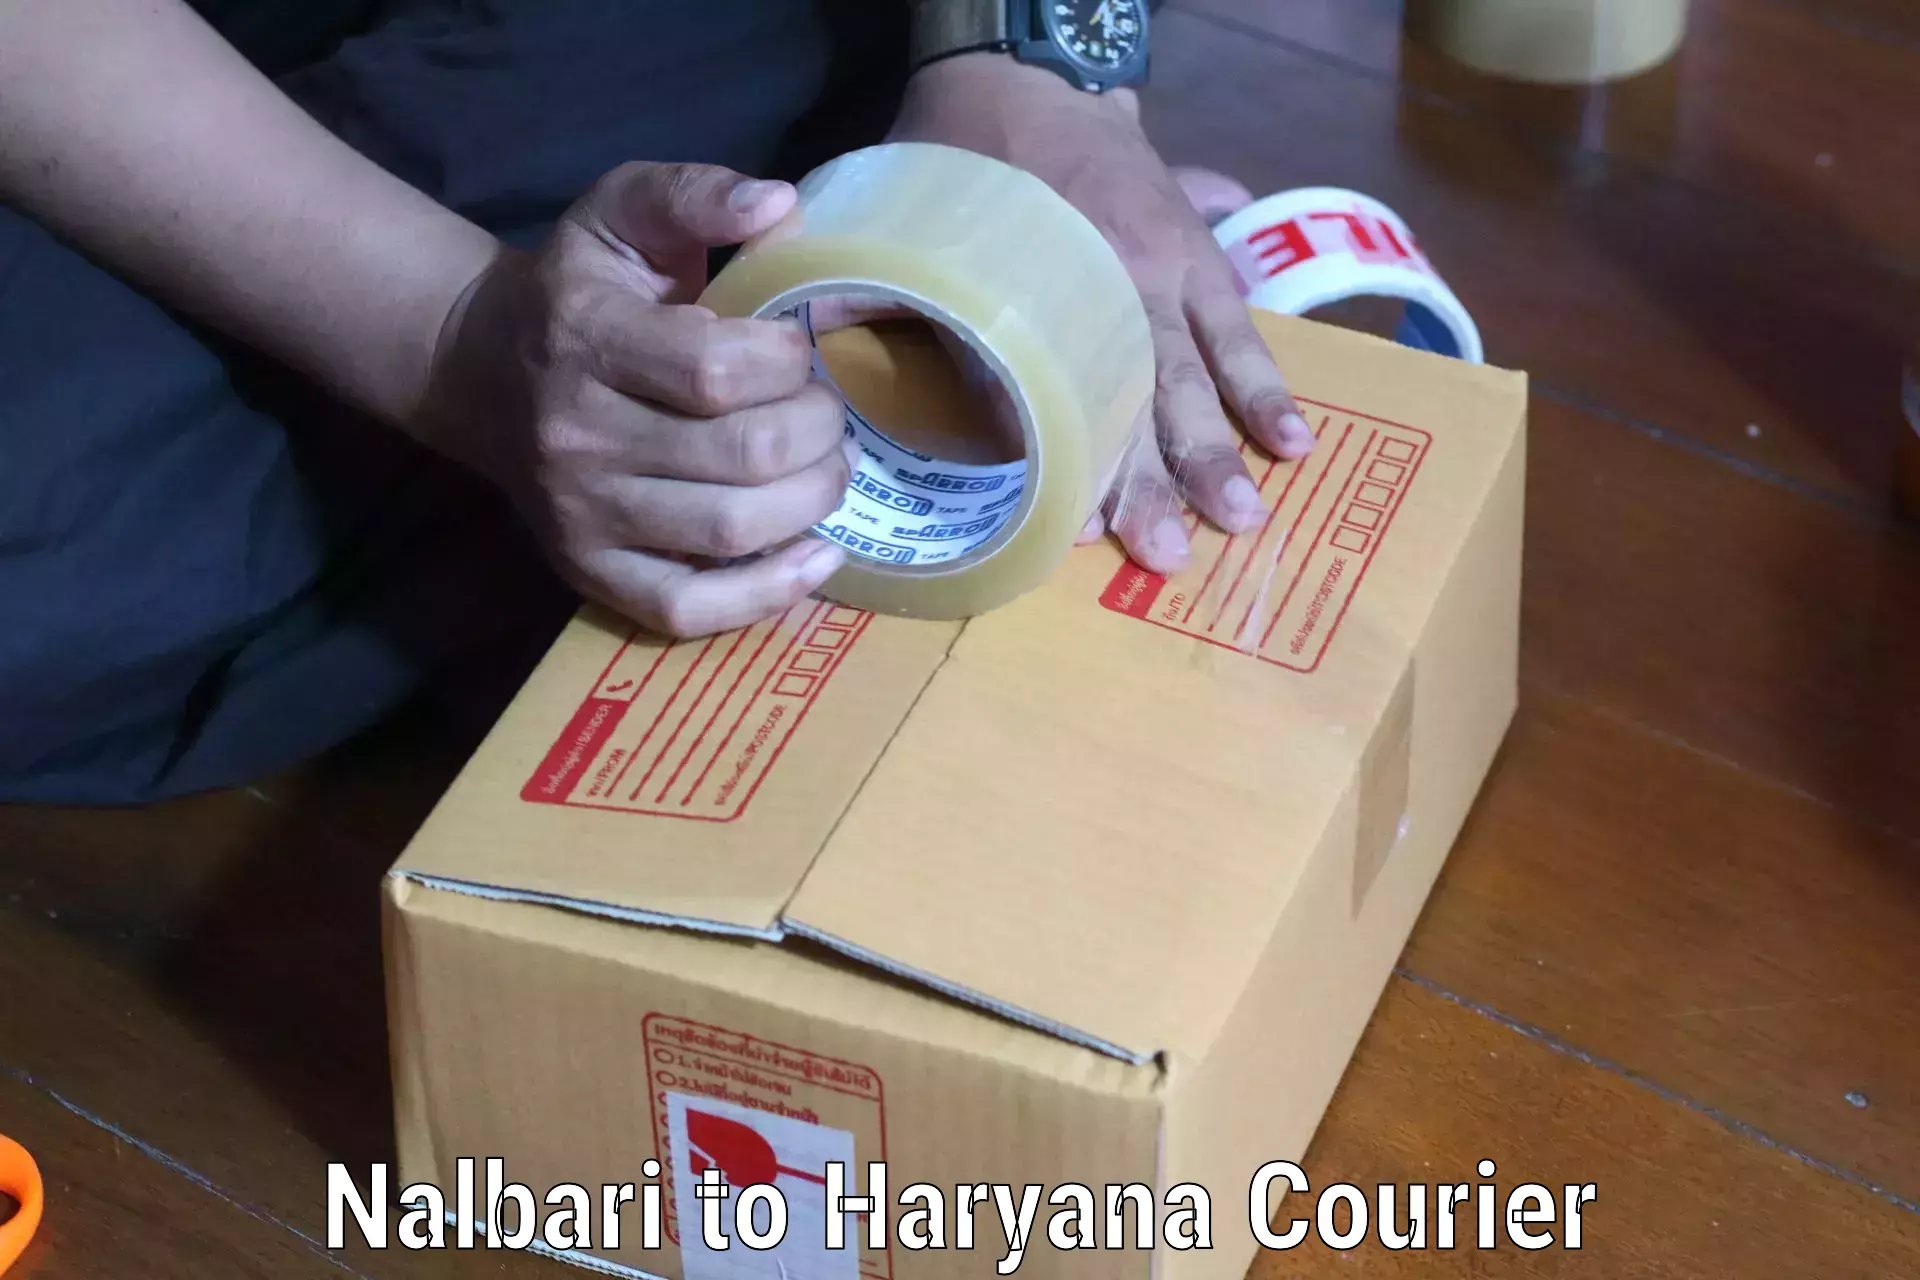 Digital shipping tools Nalbari to Chaudhary Charan Singh Haryana Agricultural University Hisar